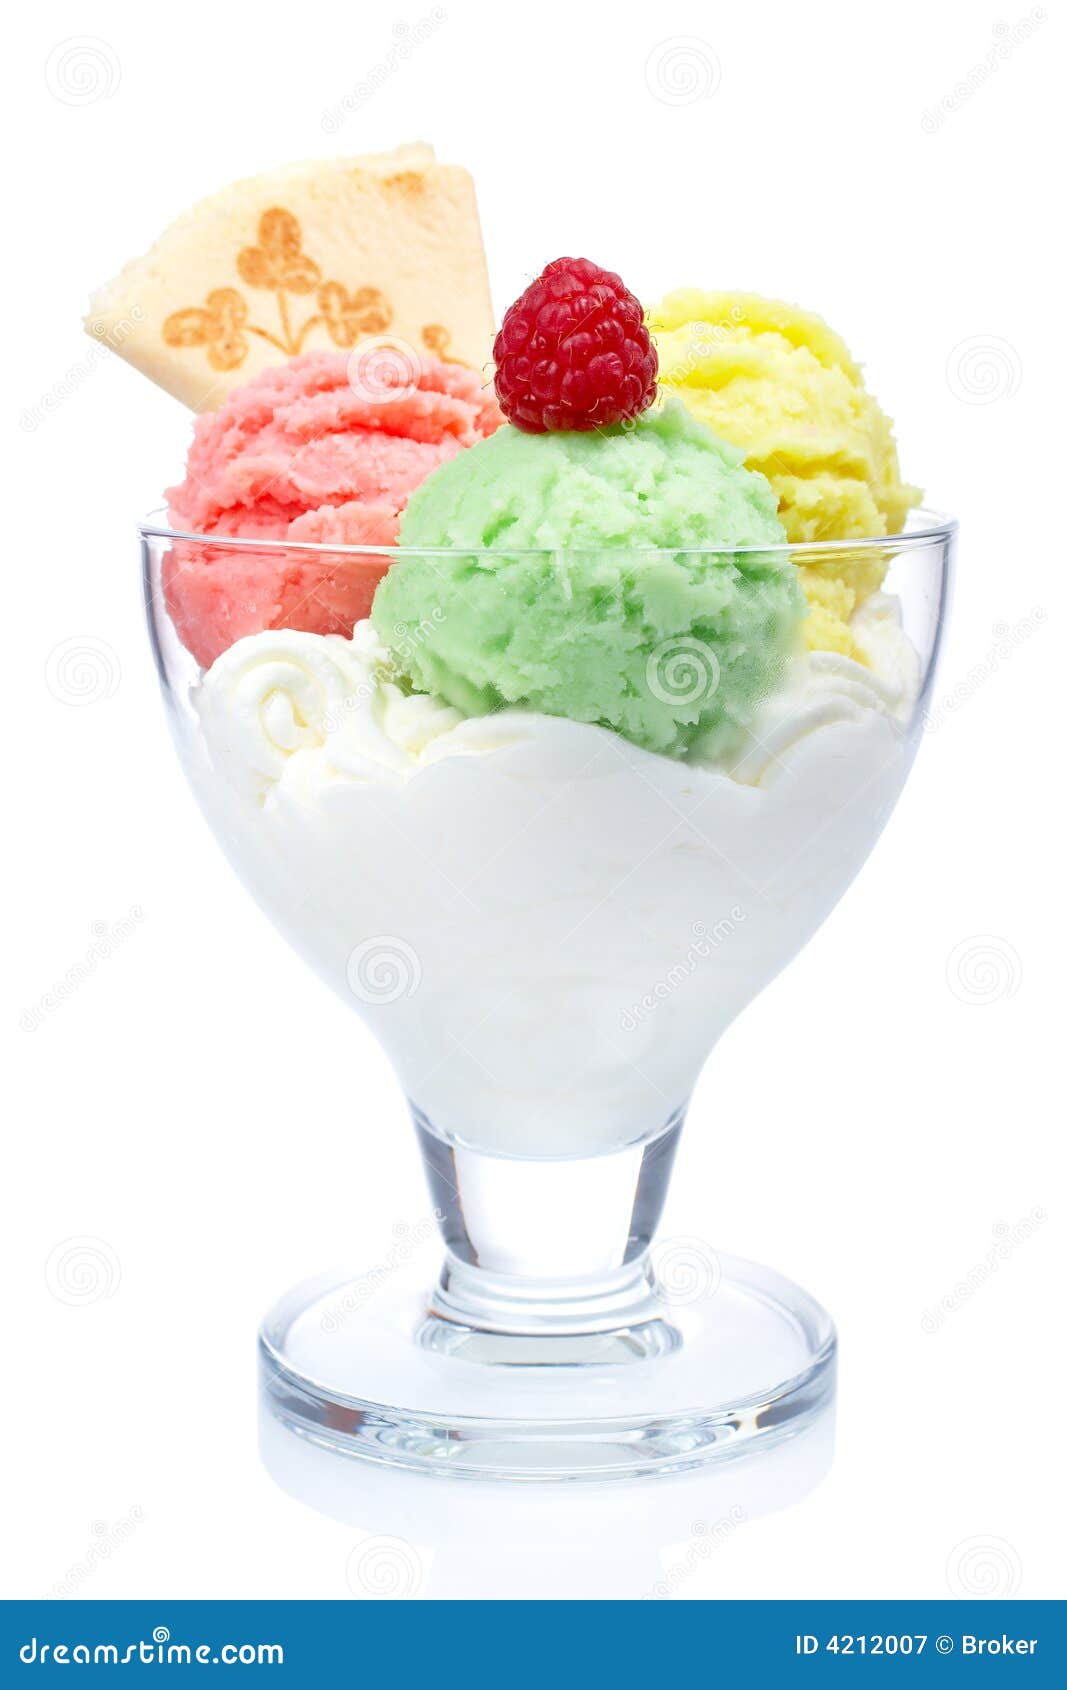 multi flavor ice cream in glass bowl